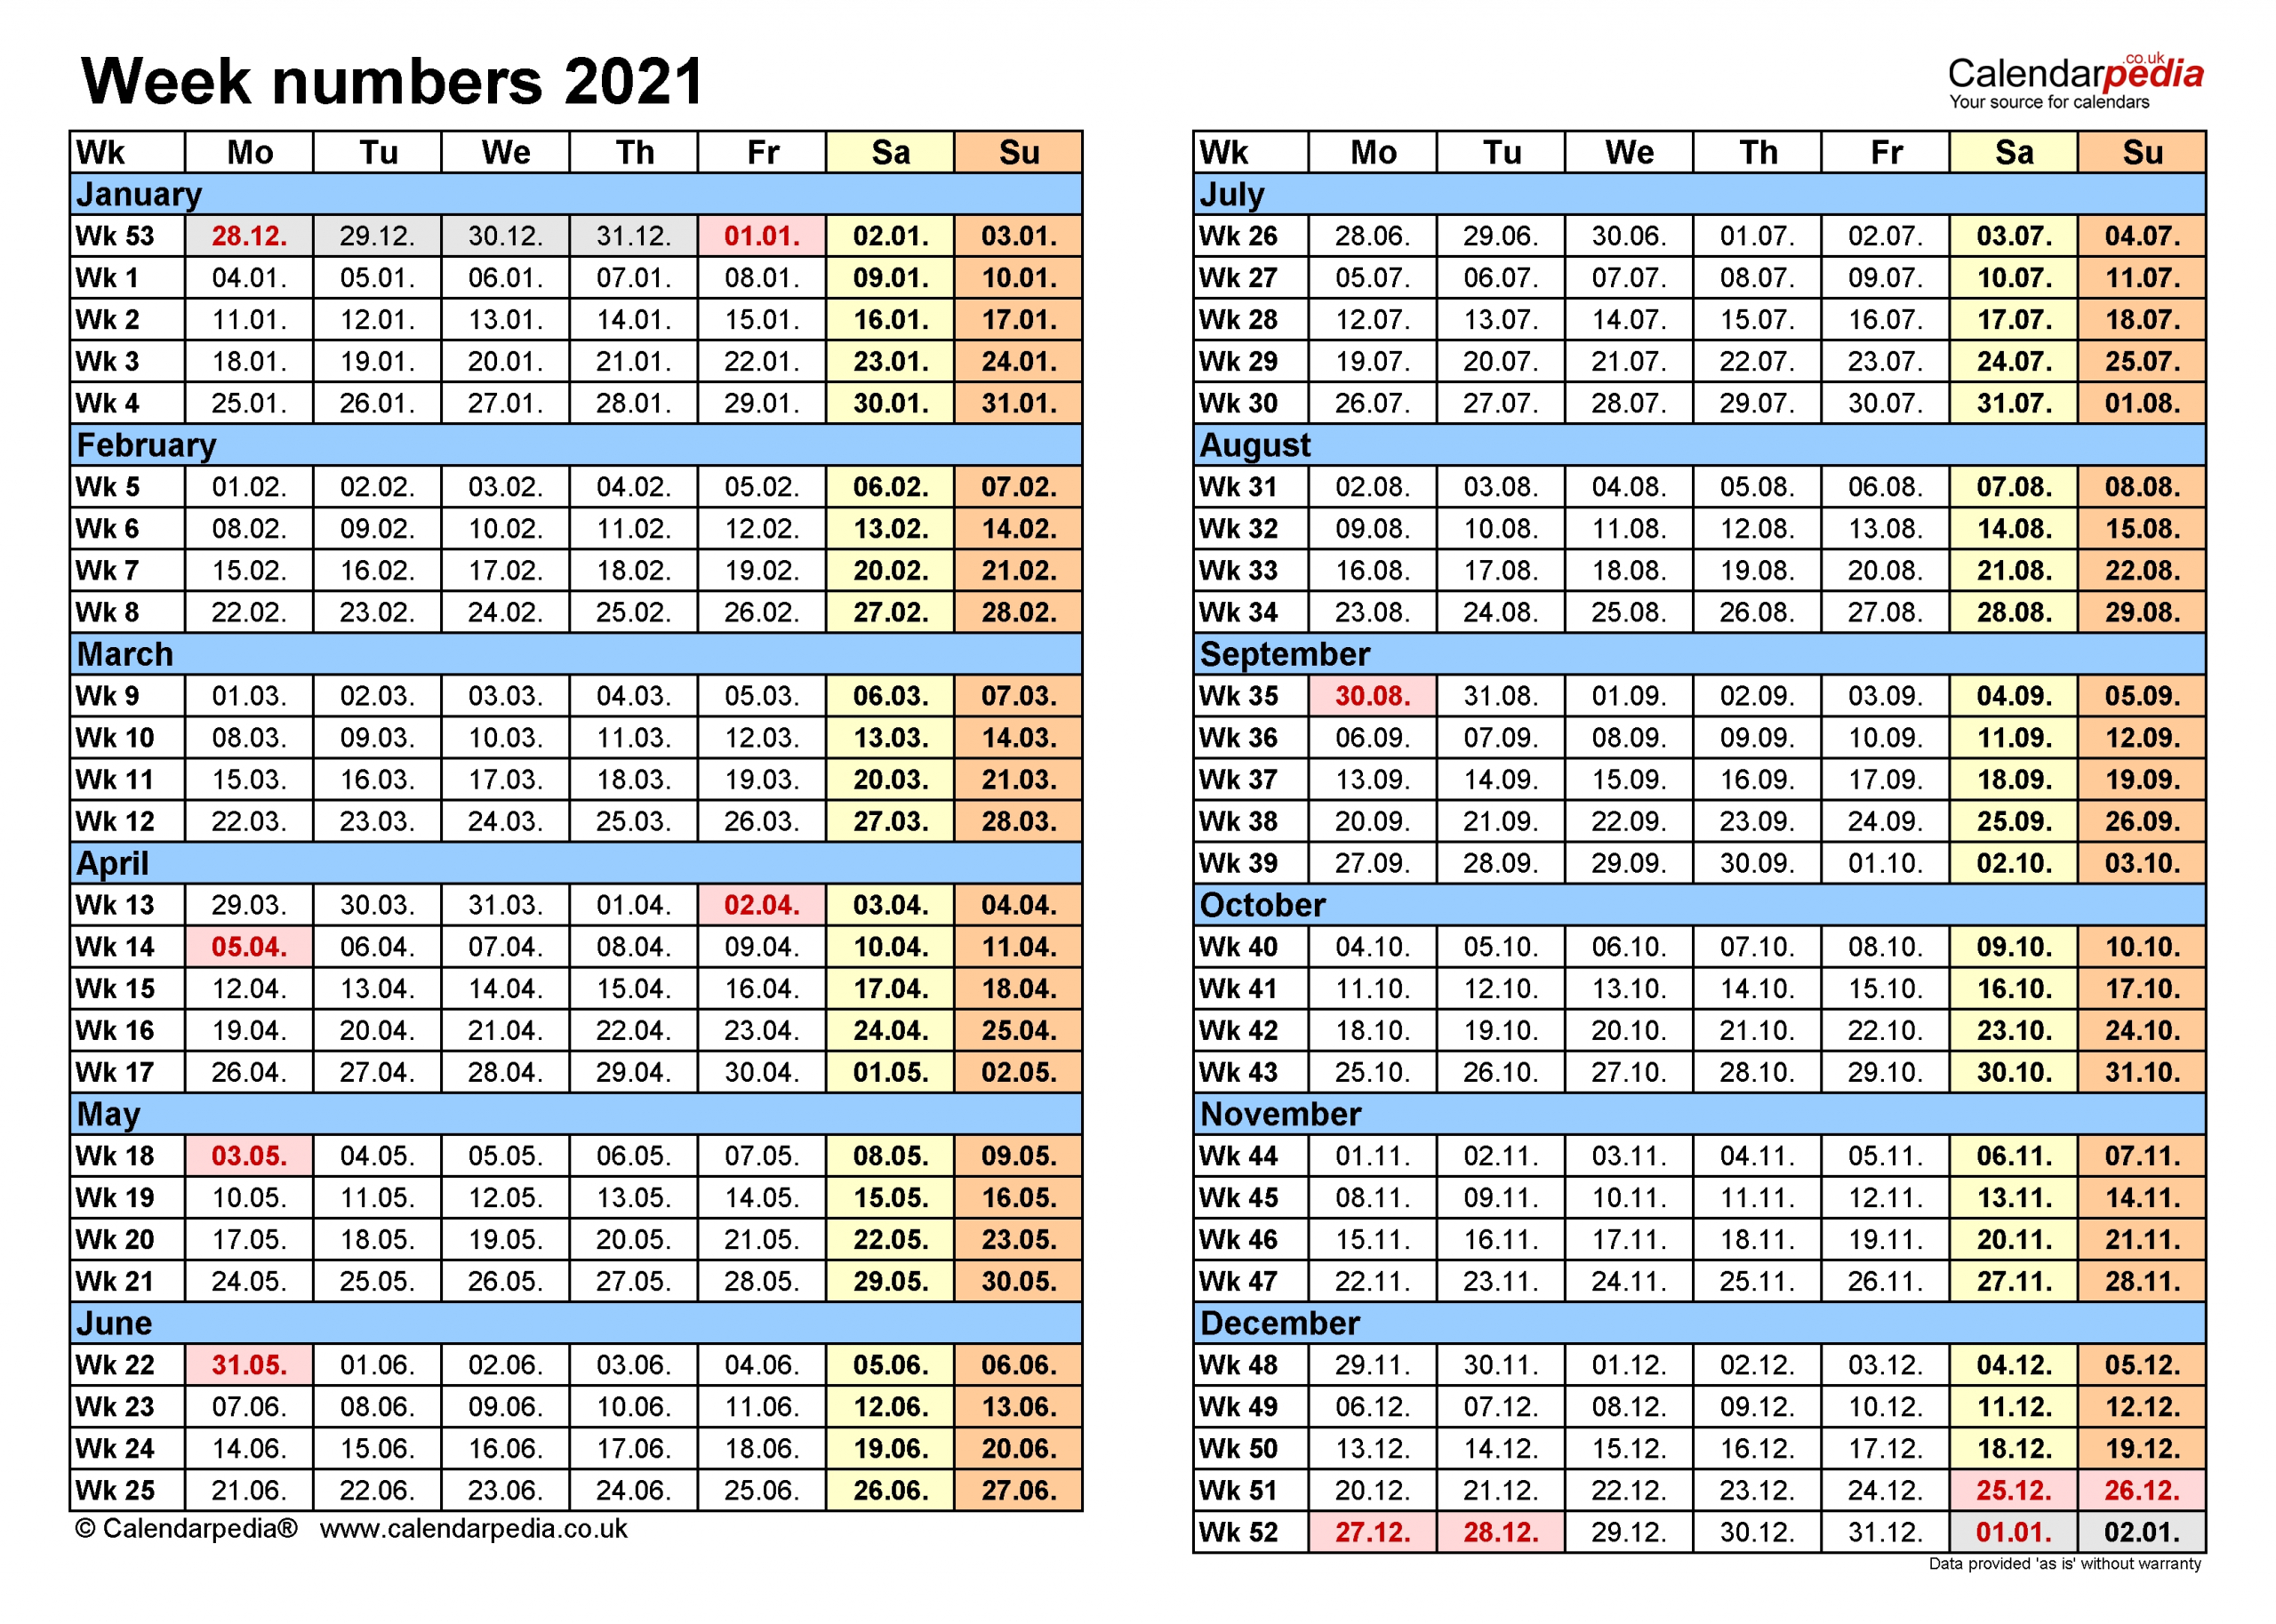 Excel Calendar 2021 With Week Numbers - Calendar